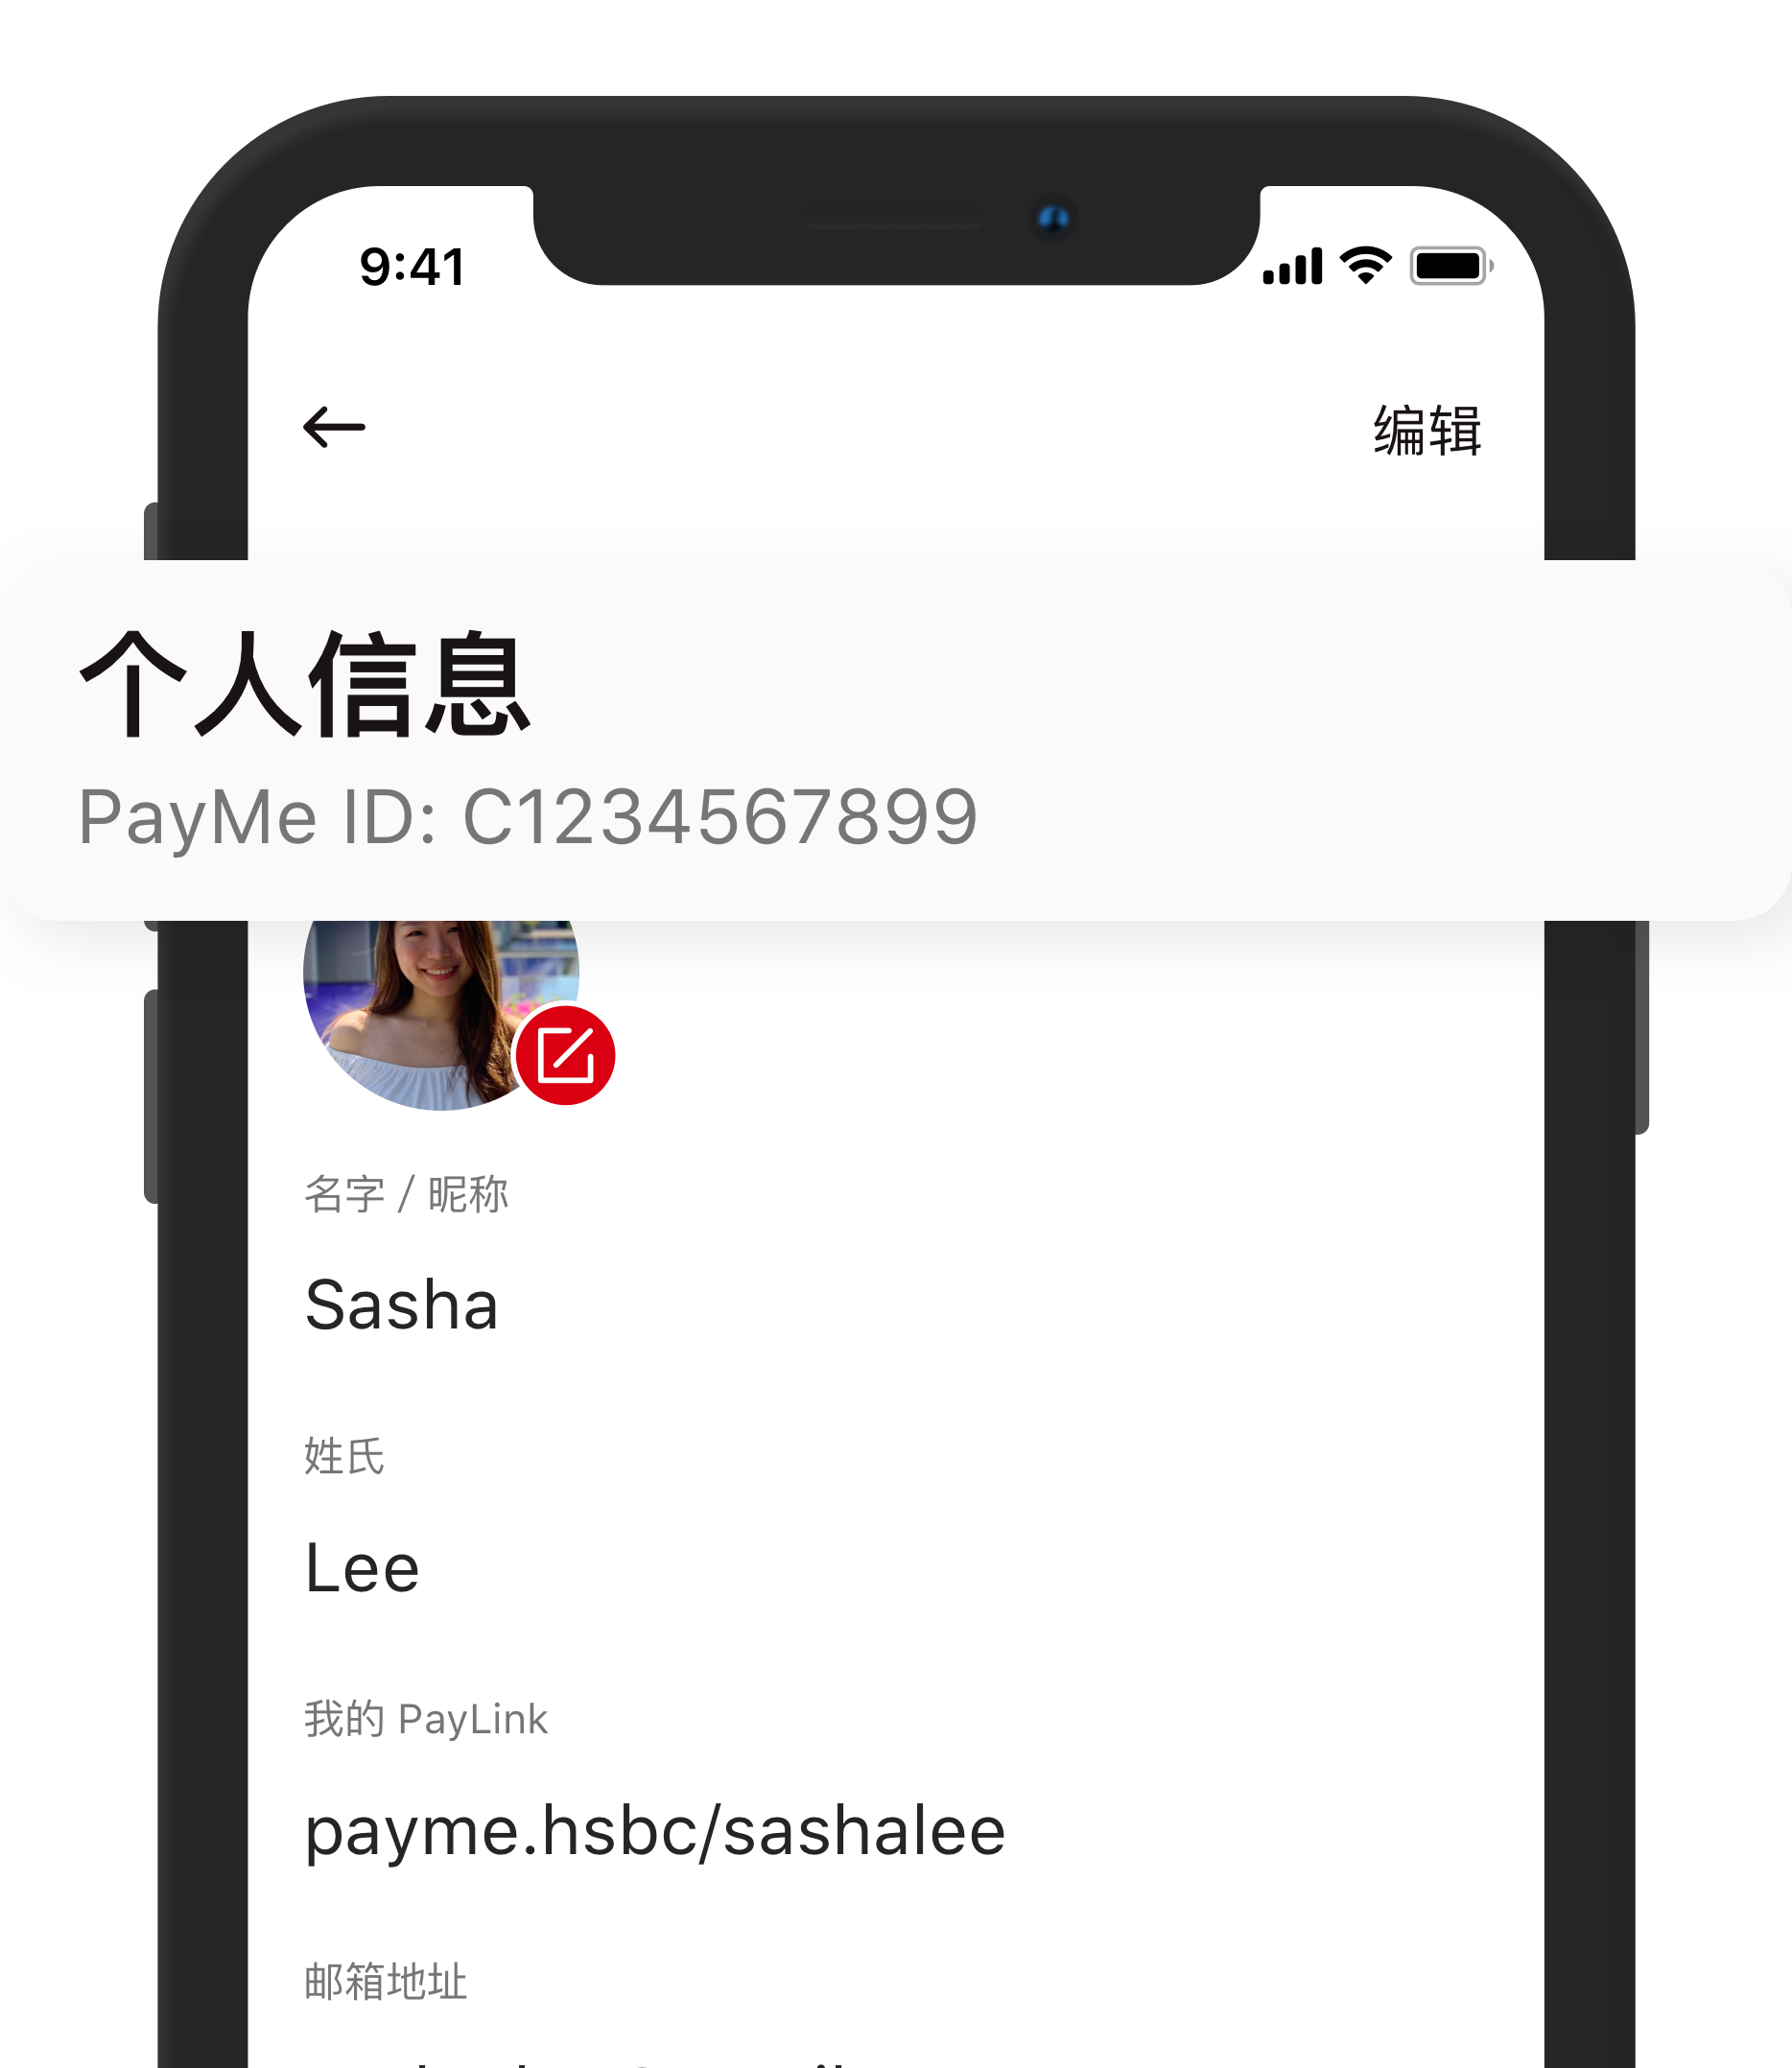 用户亦可在个人档案内查看其帐户的相关号码（即是用户的 PayMe ID）